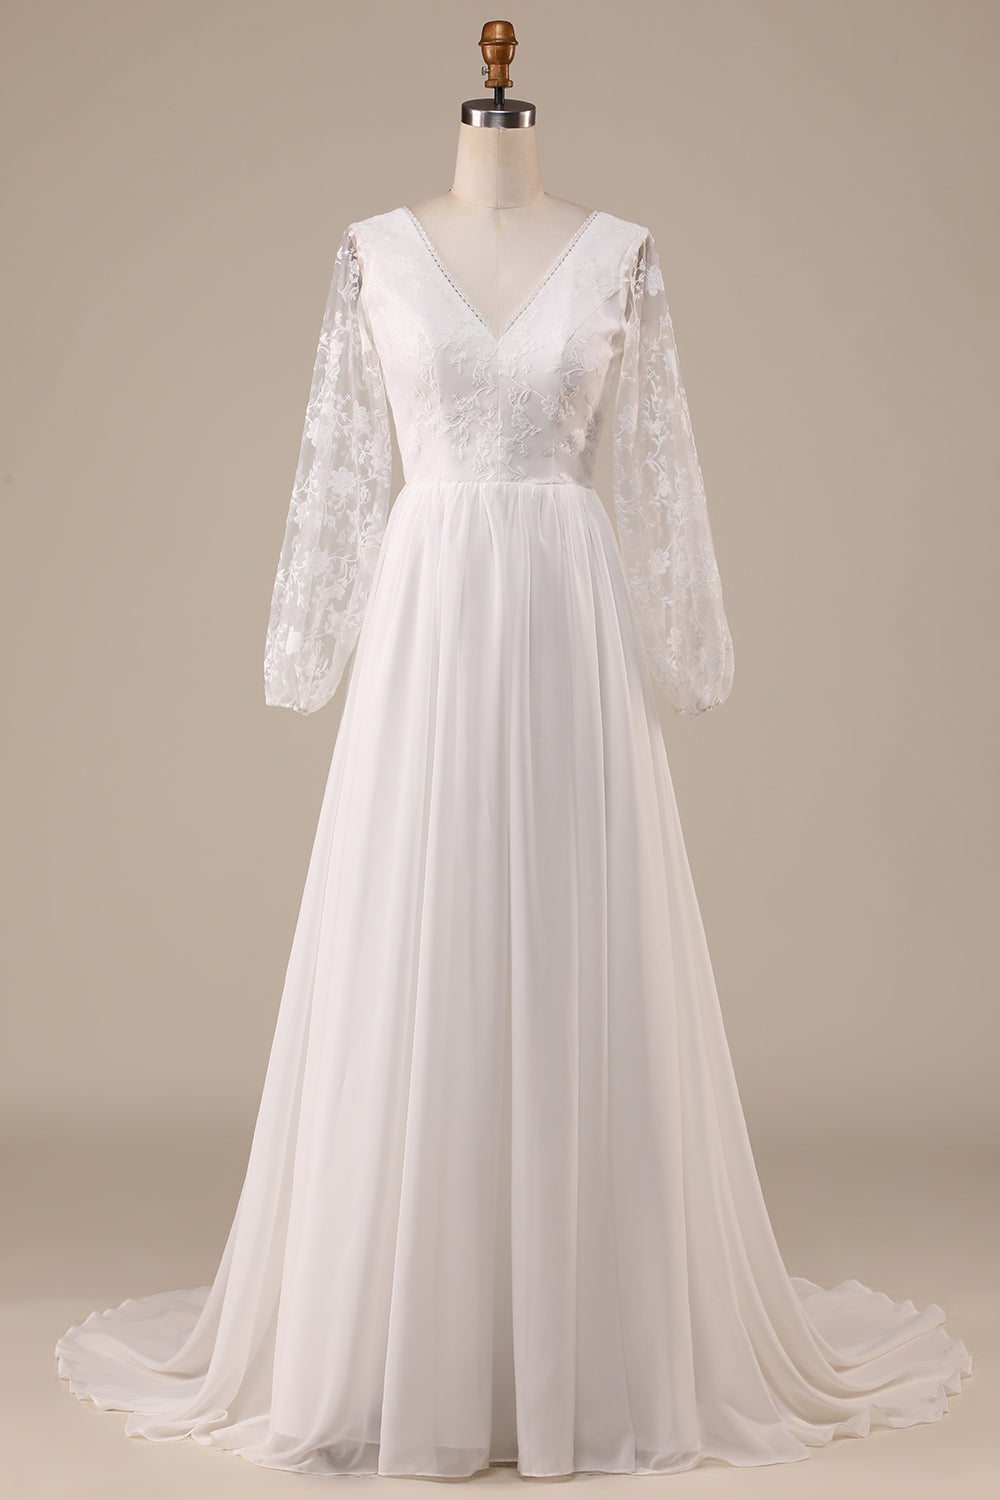 Ivory A Line Sweep Train Chiffon Boho Wedding Dress with Lace